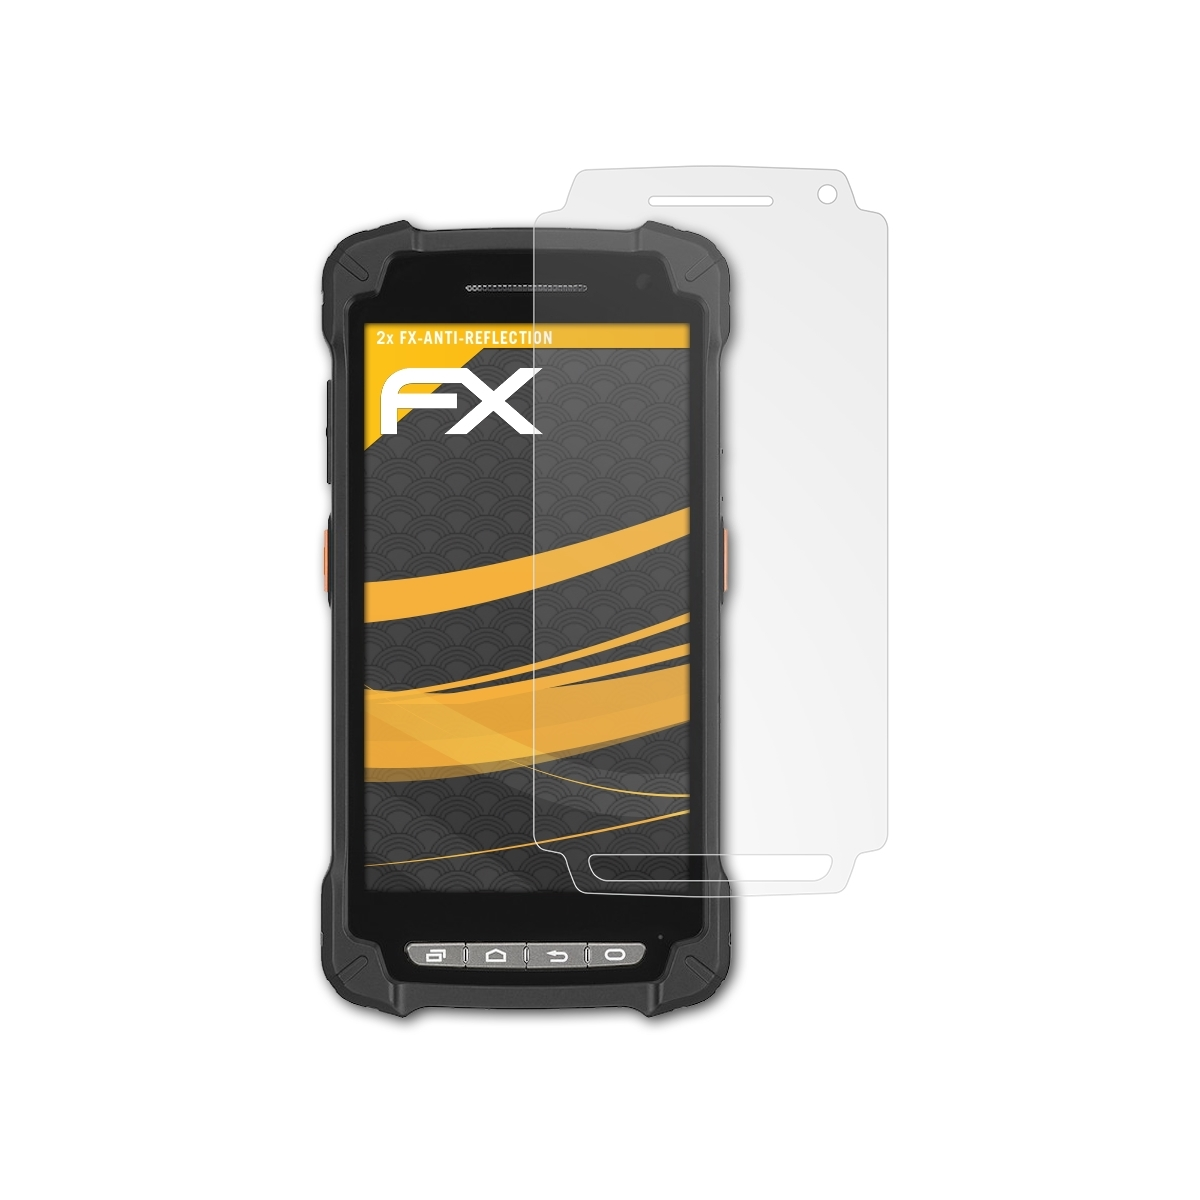 Casio FX-Antireflex 2x IT-G400) Displayschutz(für ATFOLIX